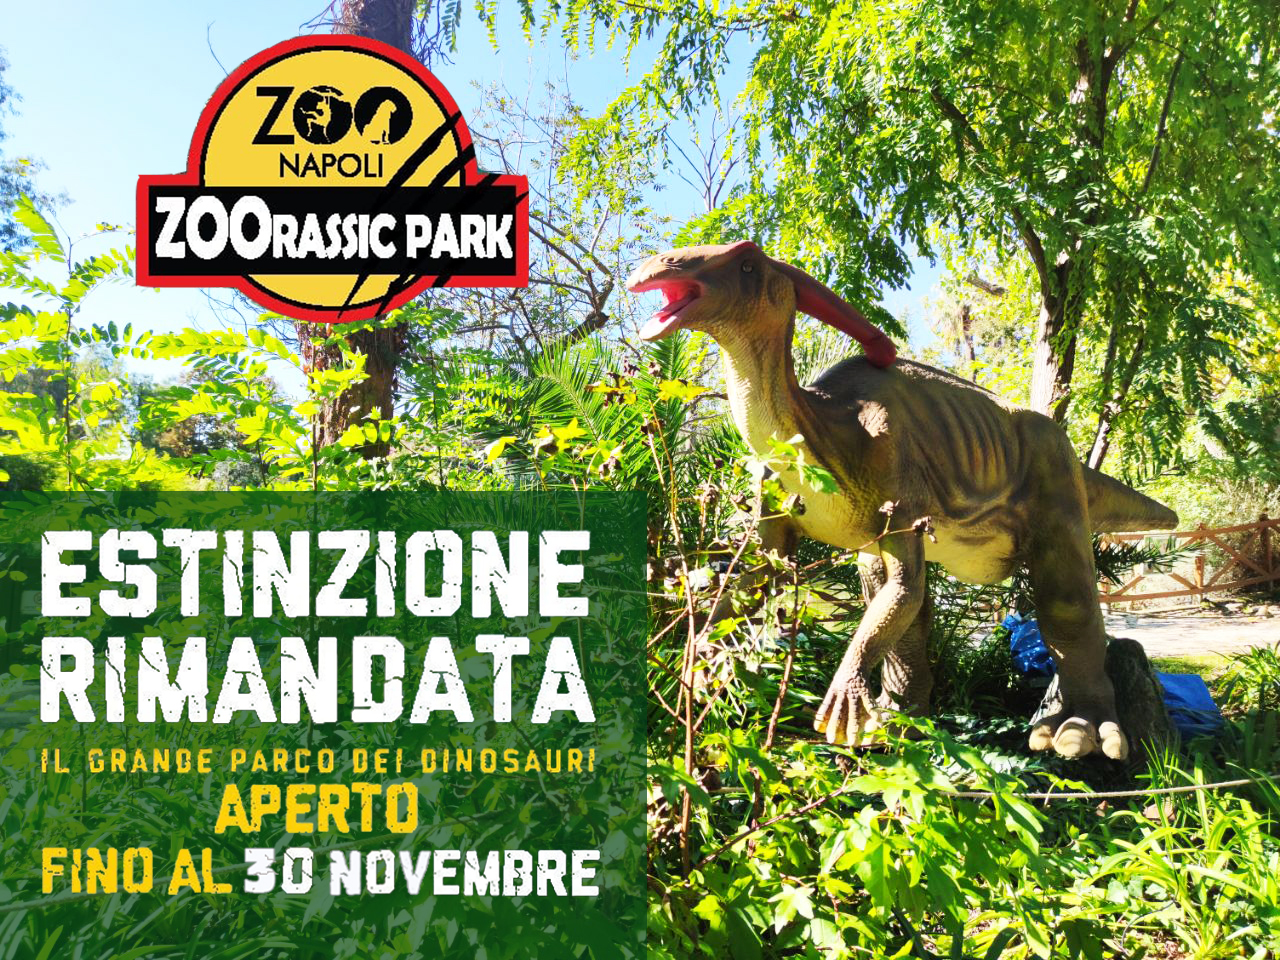 Continua fino al 30 novembre 2020 “Zoorassic Park!” allo Zoo di Napoli